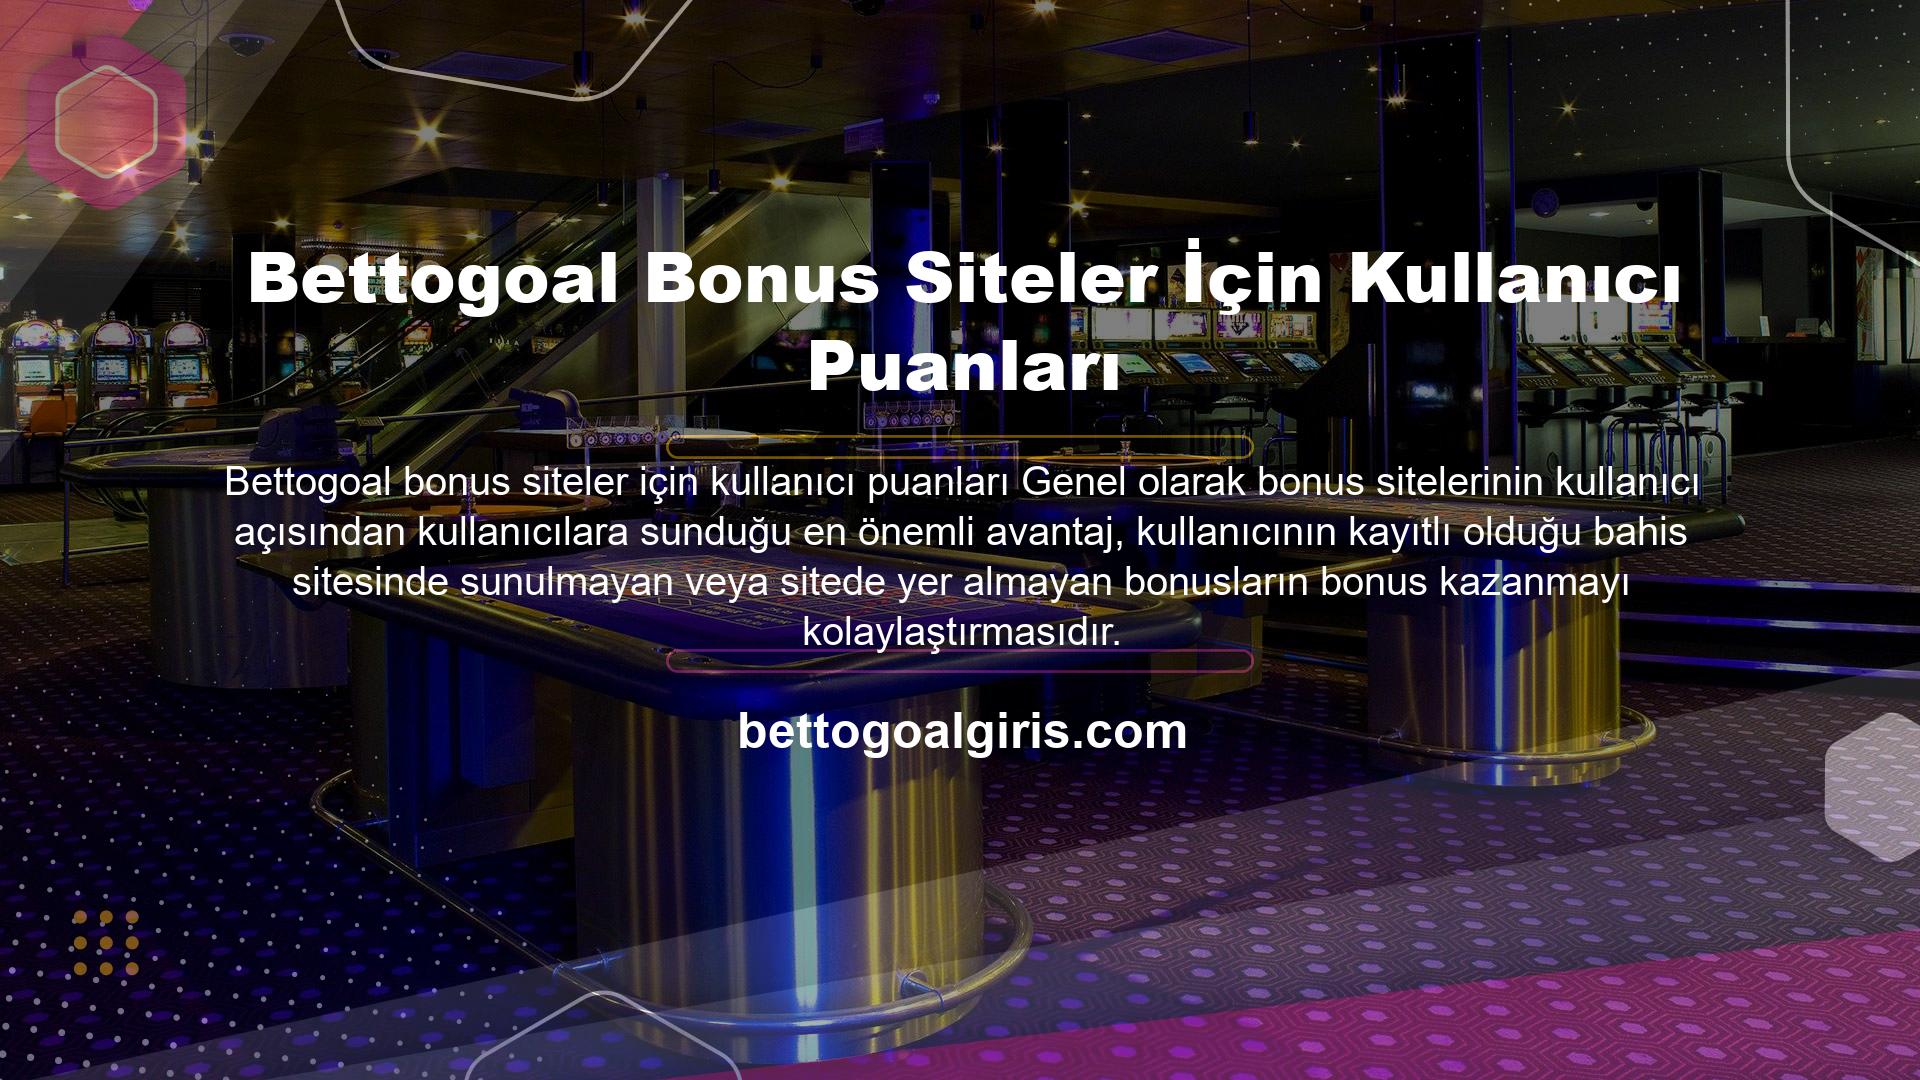 Bettogoal Bonus Siteler İçin Kullanıcı Puanları
Bonus sitelerinde olduğu gibi, ücretsiz bahisler bettogoal bonus siteler için kullanıcı puanları önemlidir